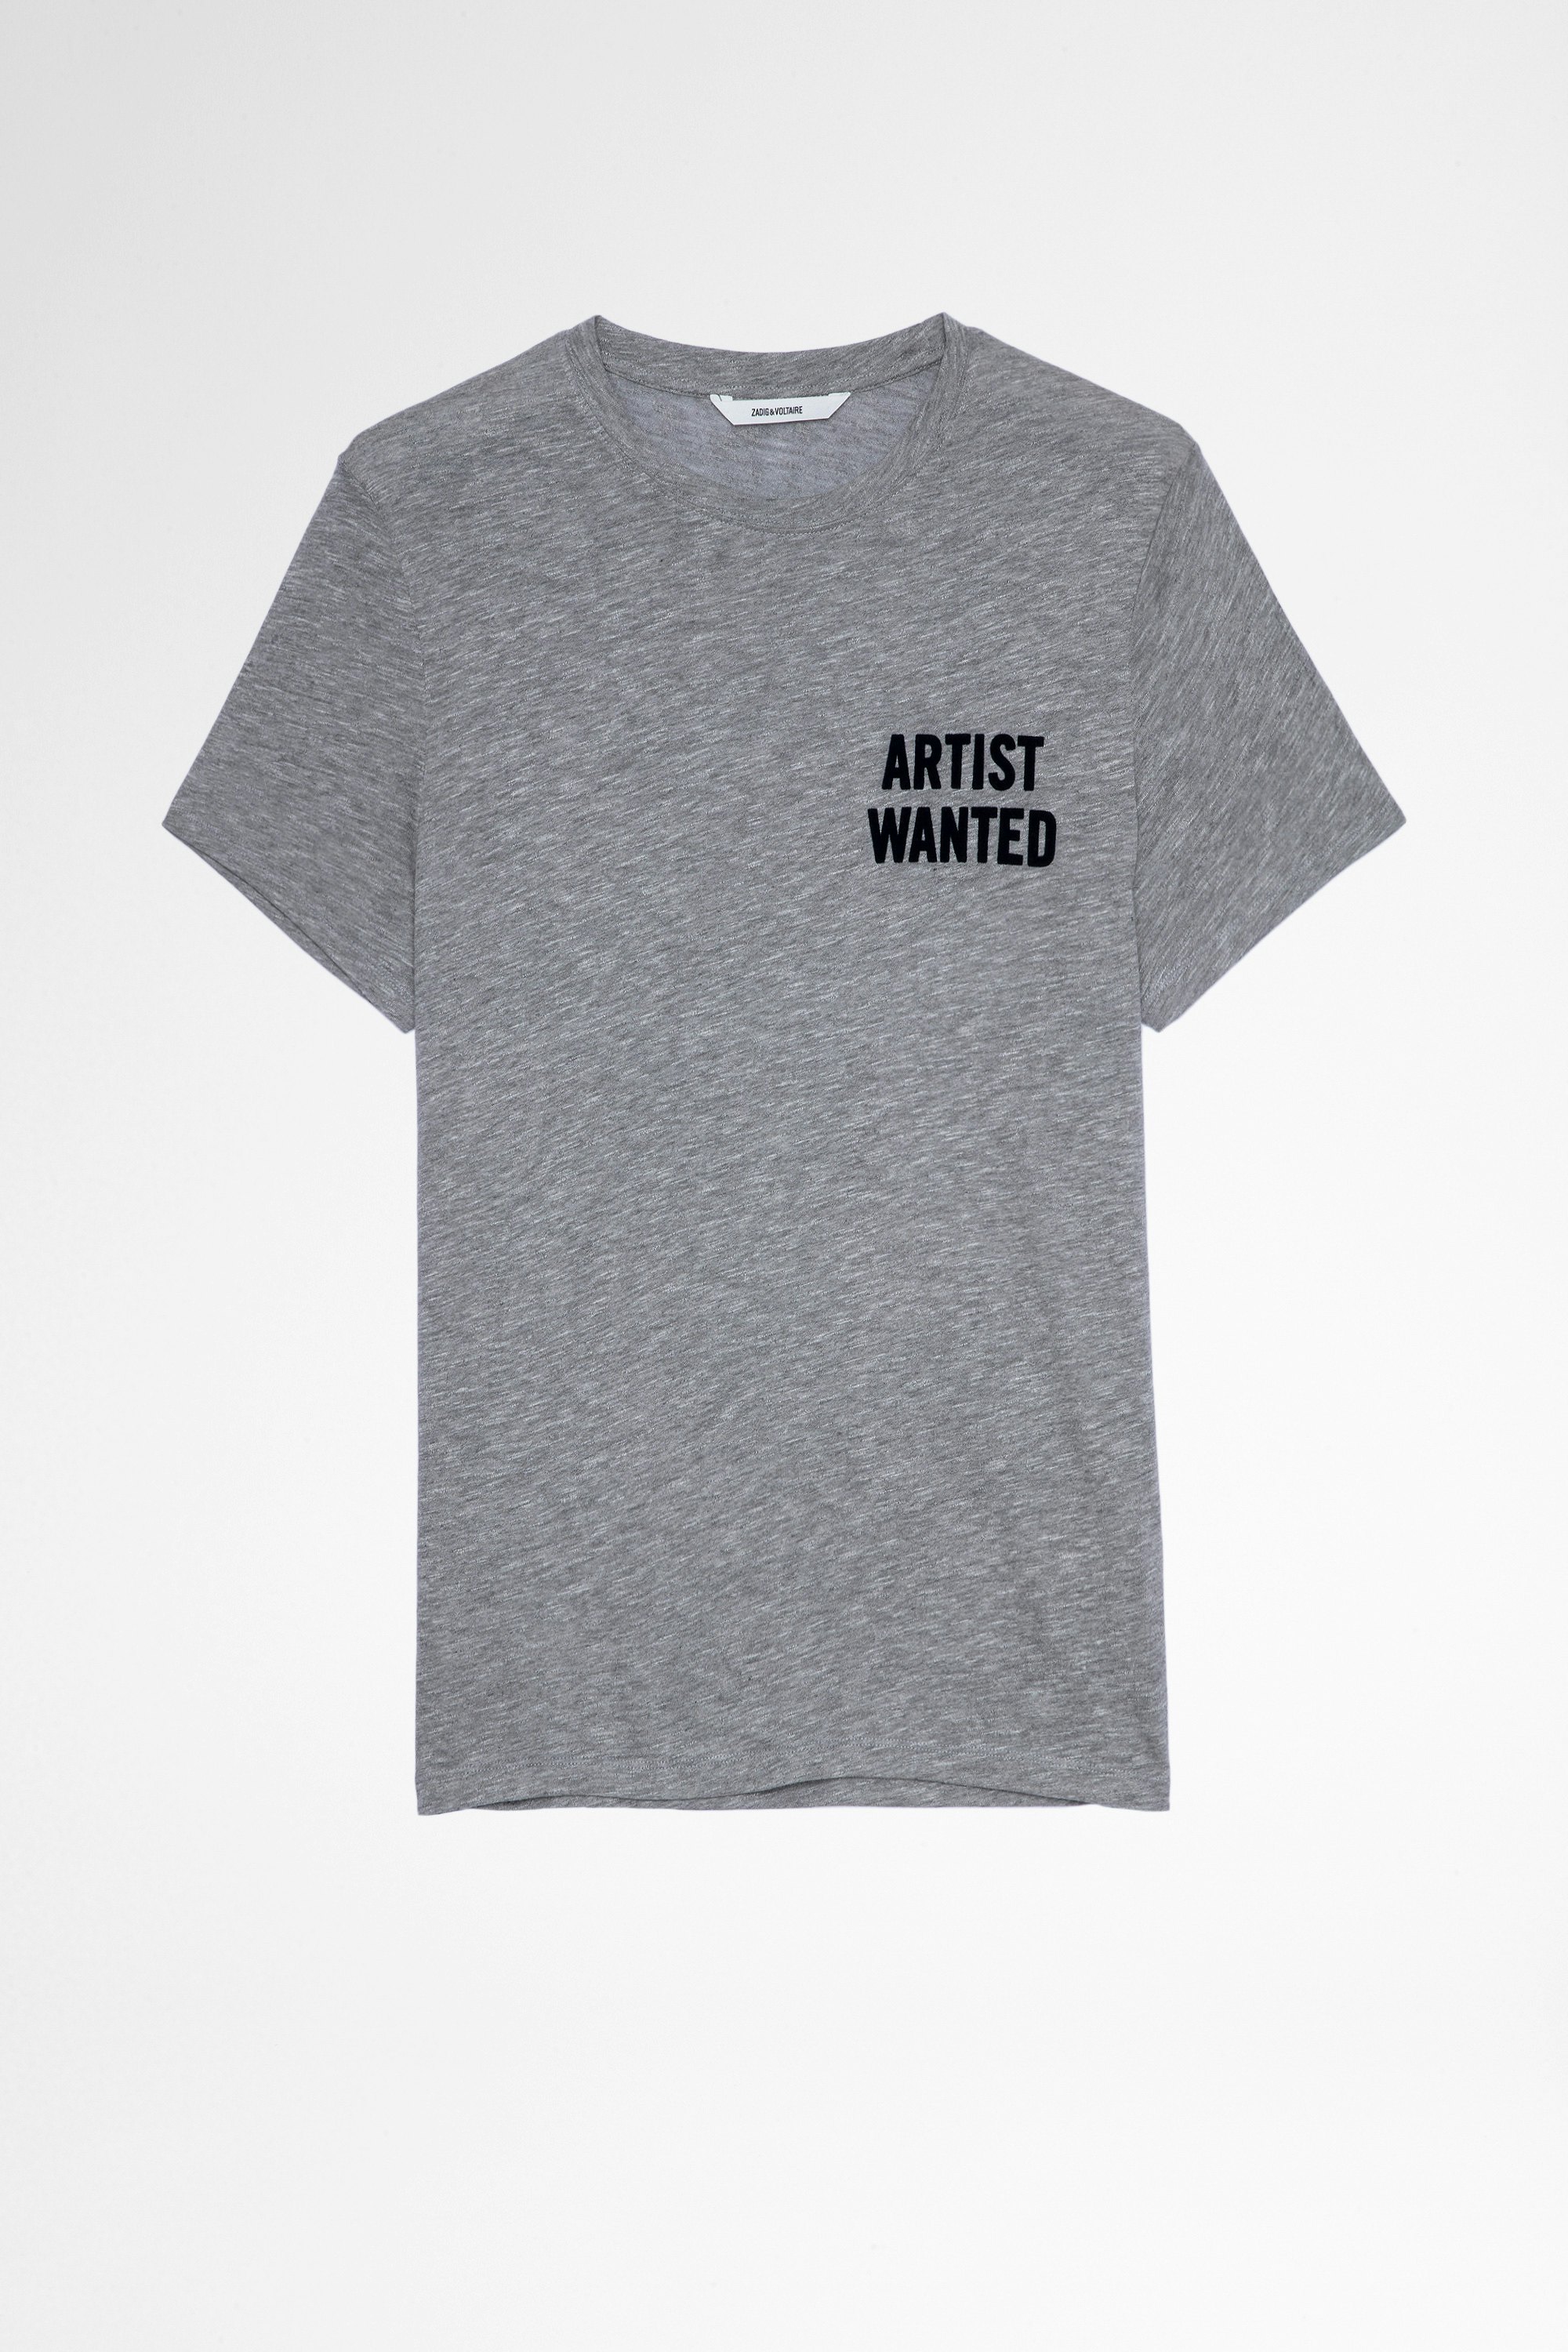 Camiseta Tommy Camiseta gris de hombre de algodón y viscosa Artist Wanted